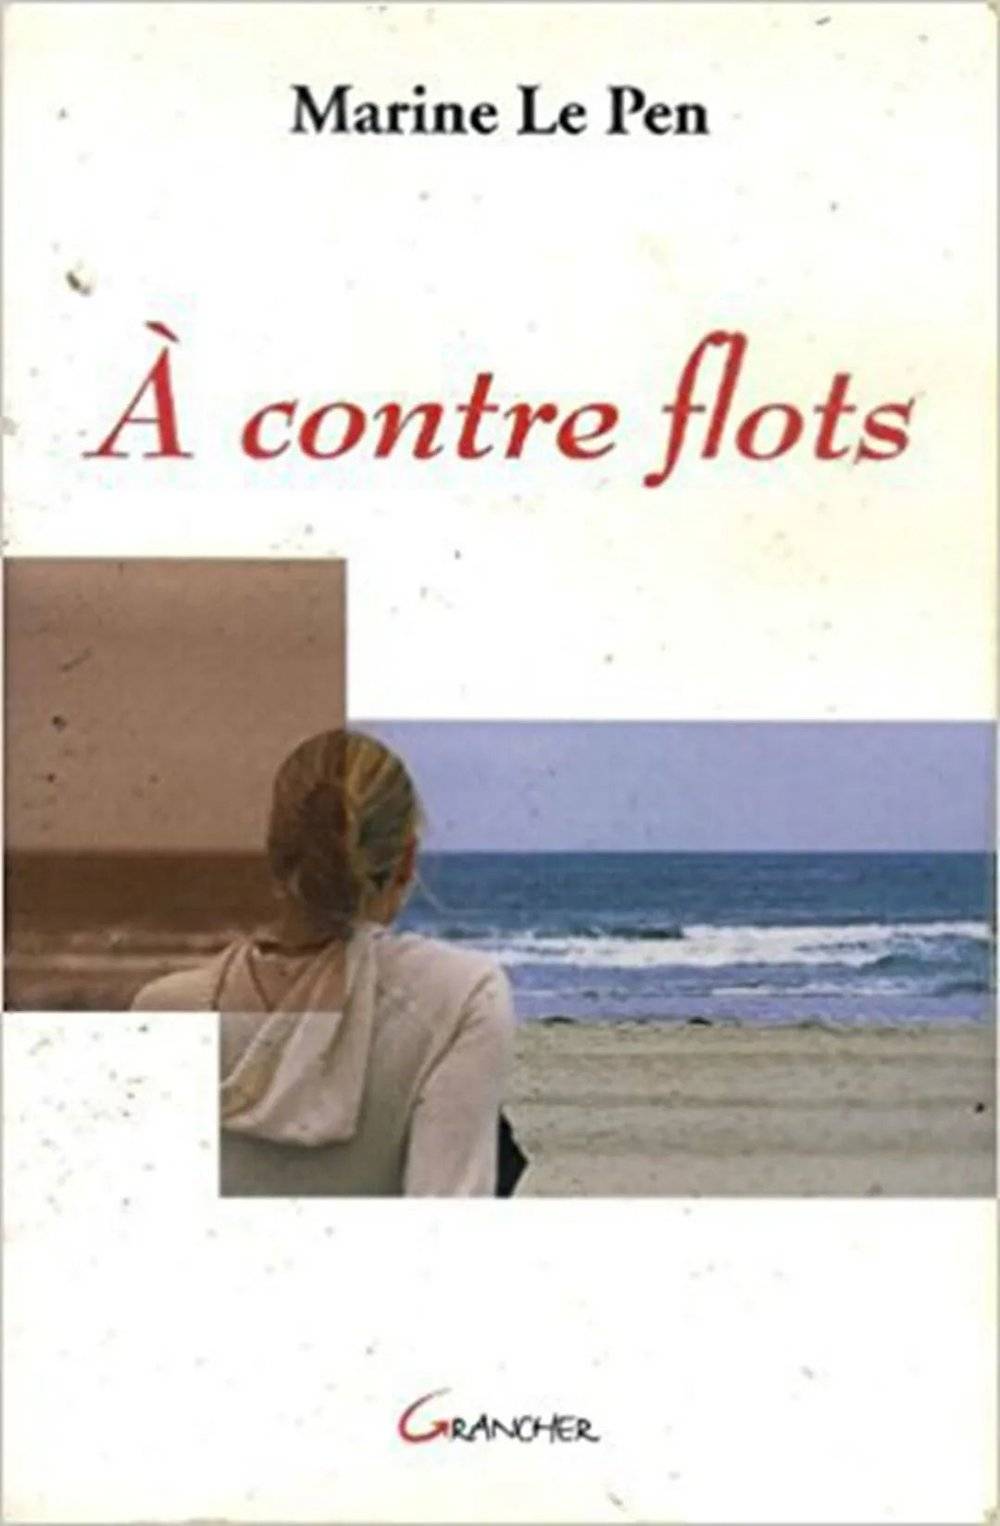 ◎ 《逆流而上》（À Contre Flots）的初版封面。图片来源：豆瓣<br>